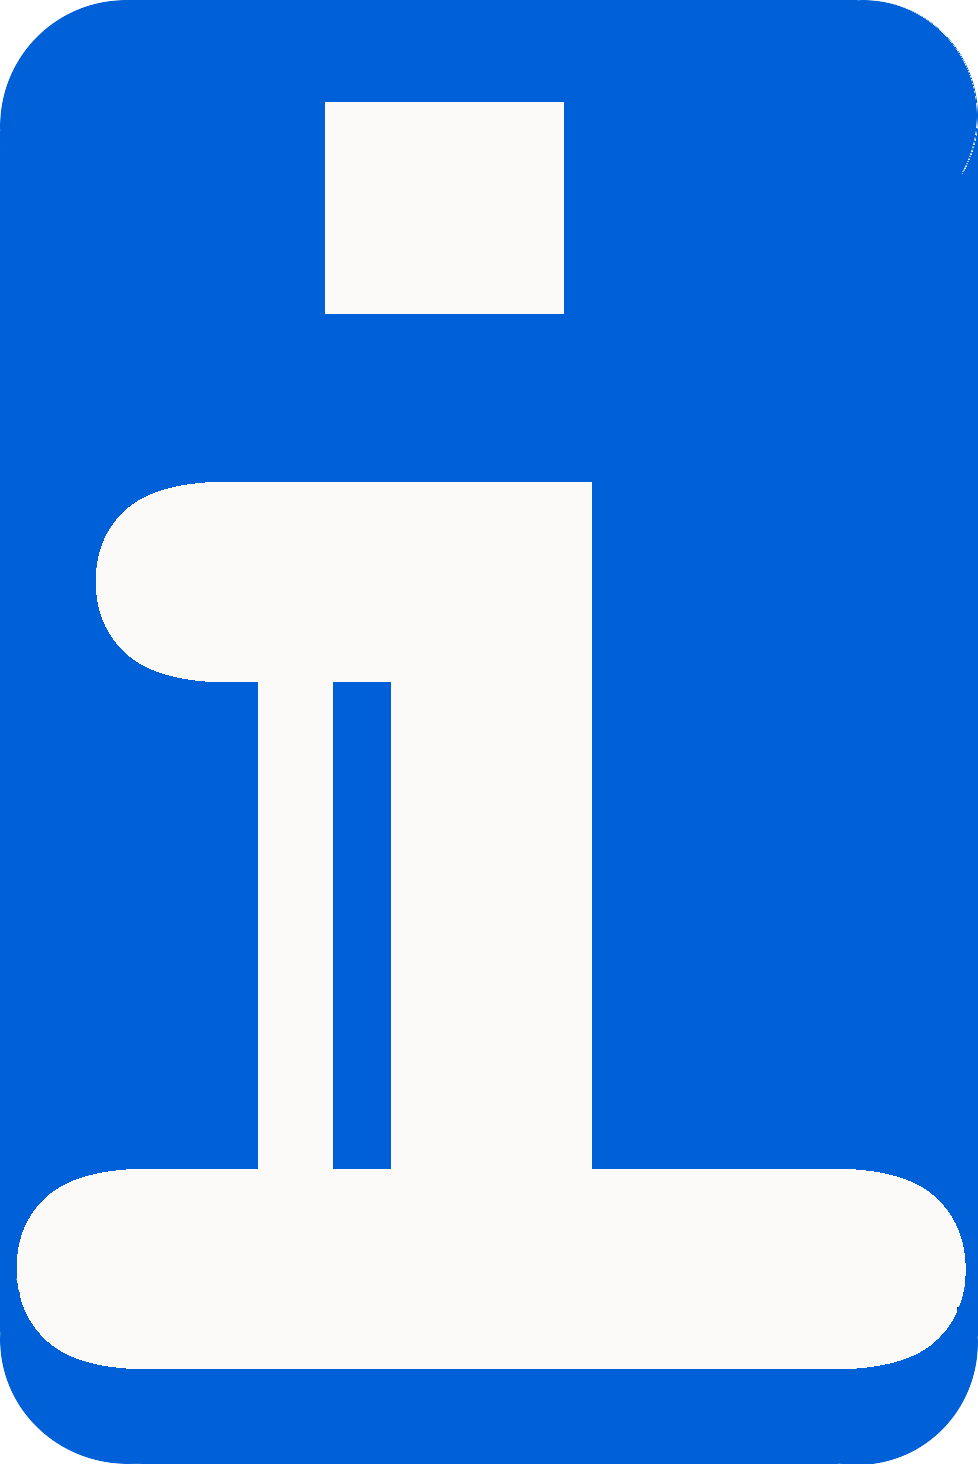 logo_infolab_blau_rund.png